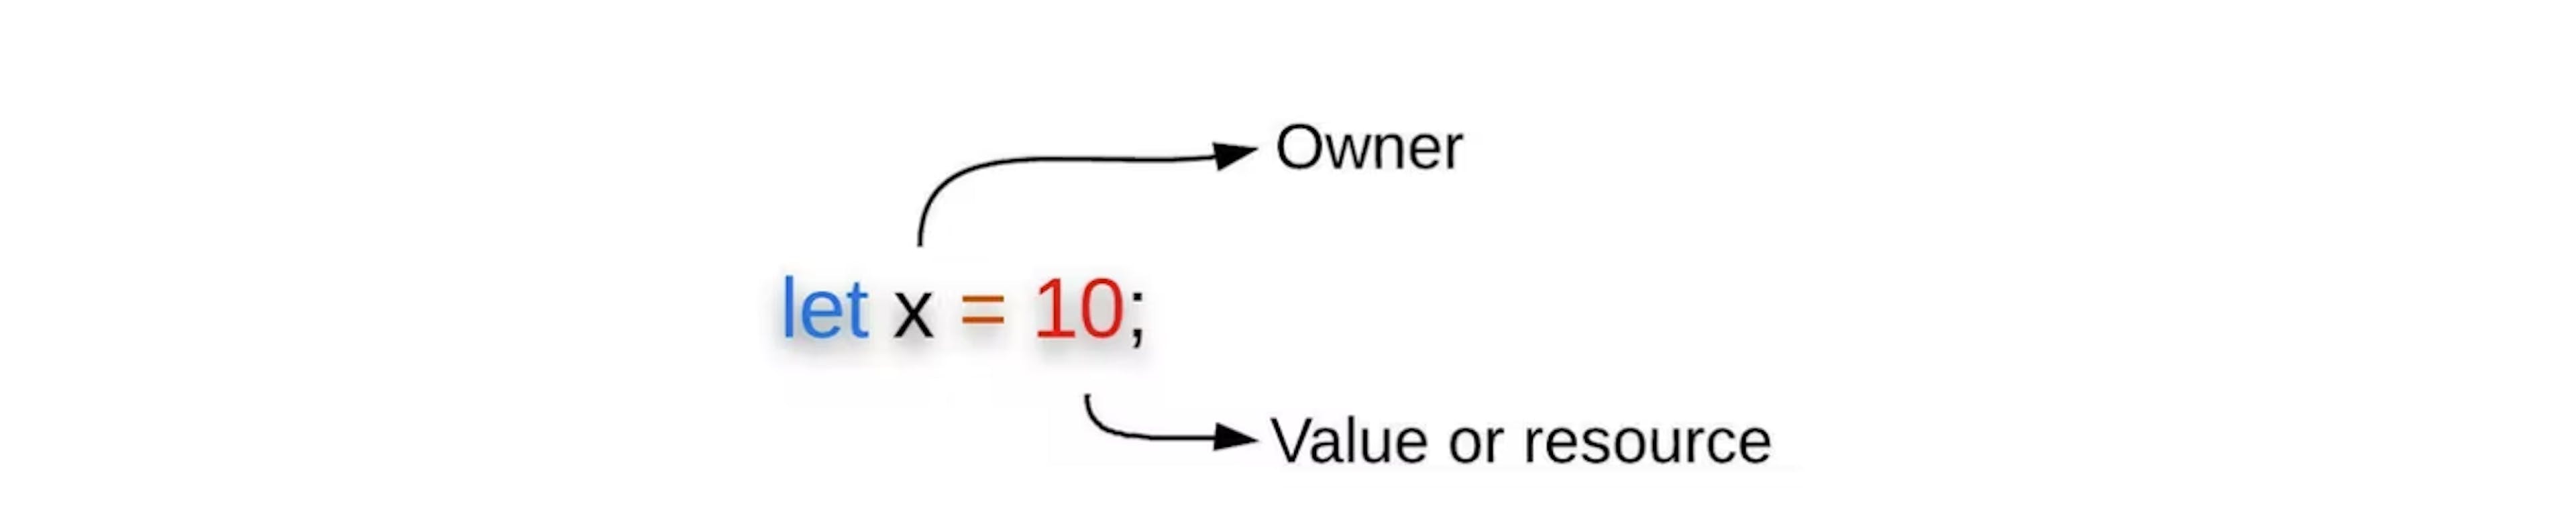 Hình 3: Ràng buộc biến hiển thị chủ sở hữu và giá trị / tài nguyên của nó.